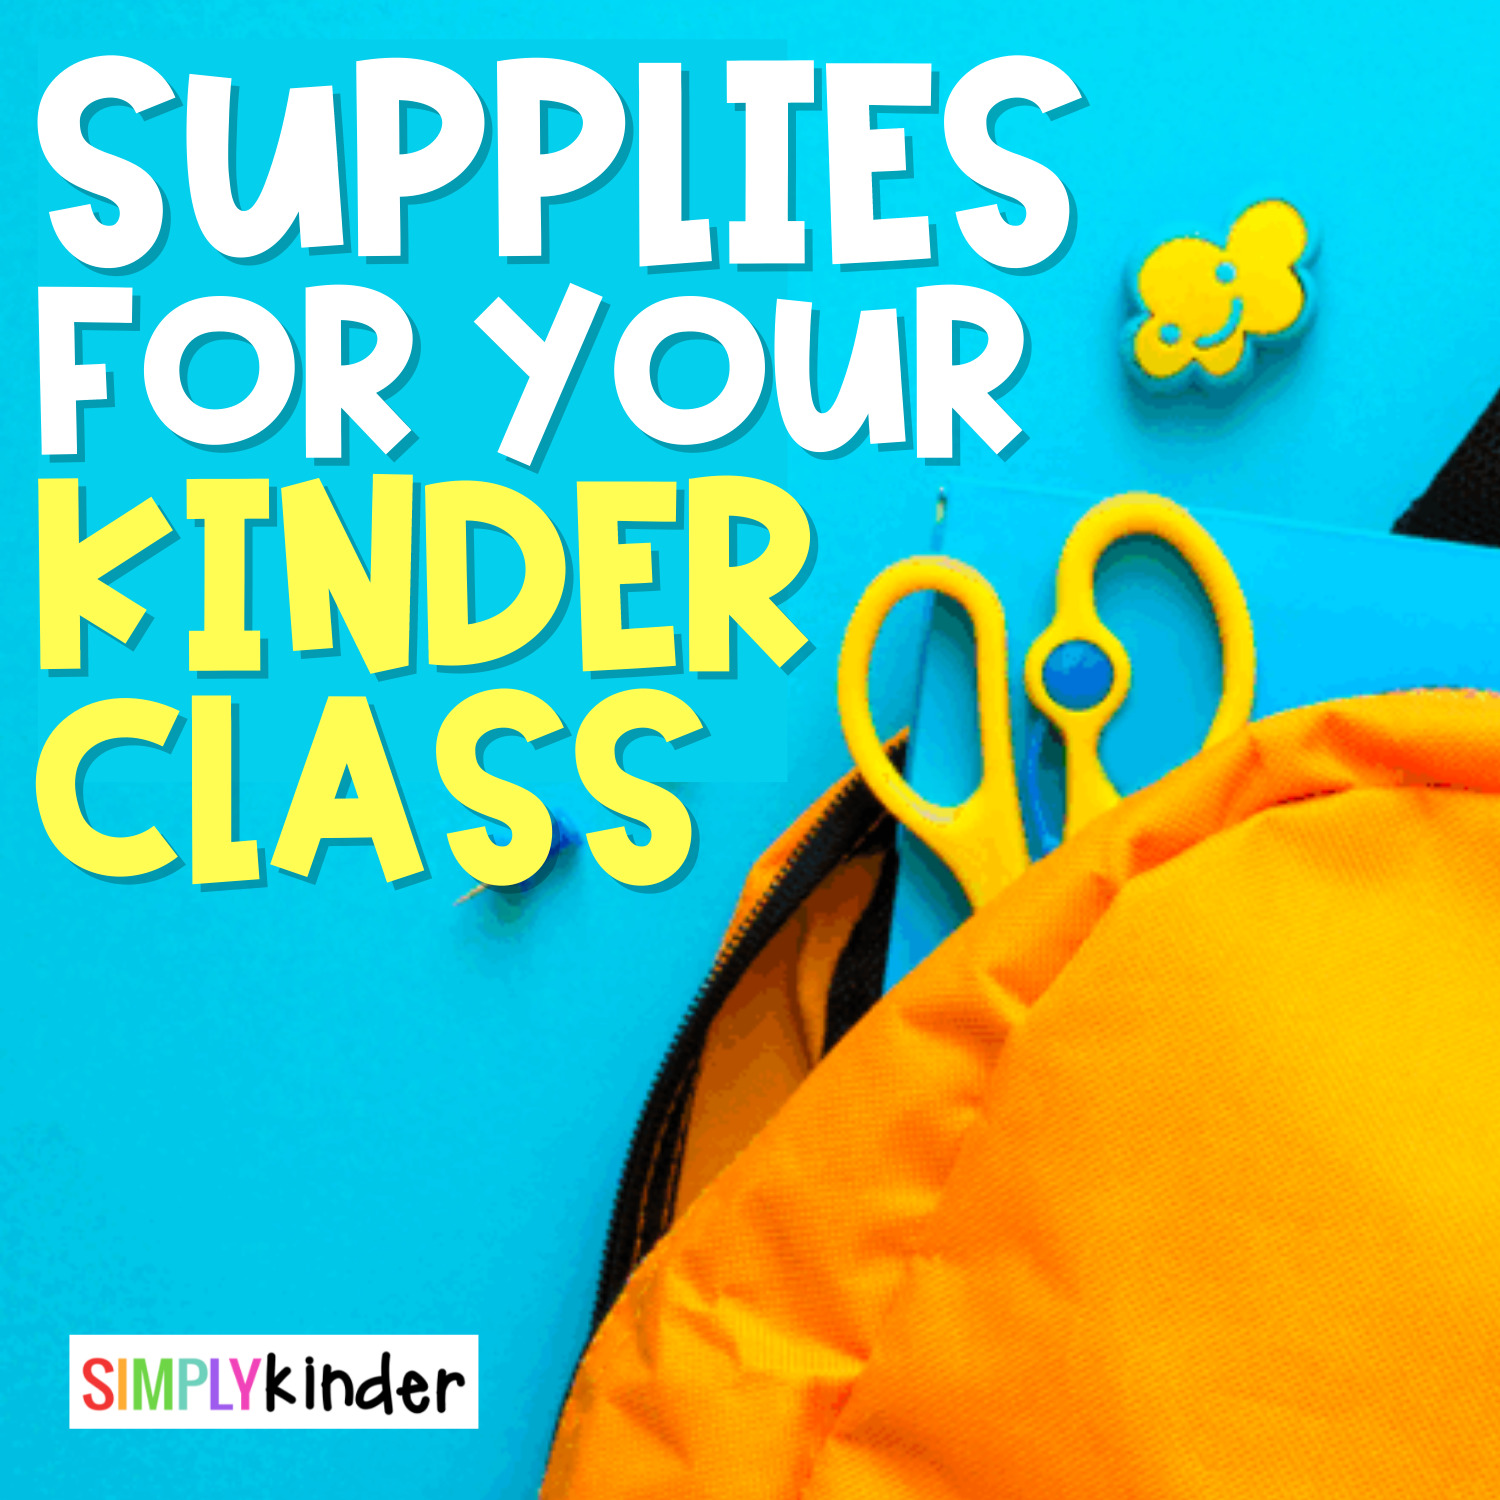 What School Supplies Do Kindergarteners Need?